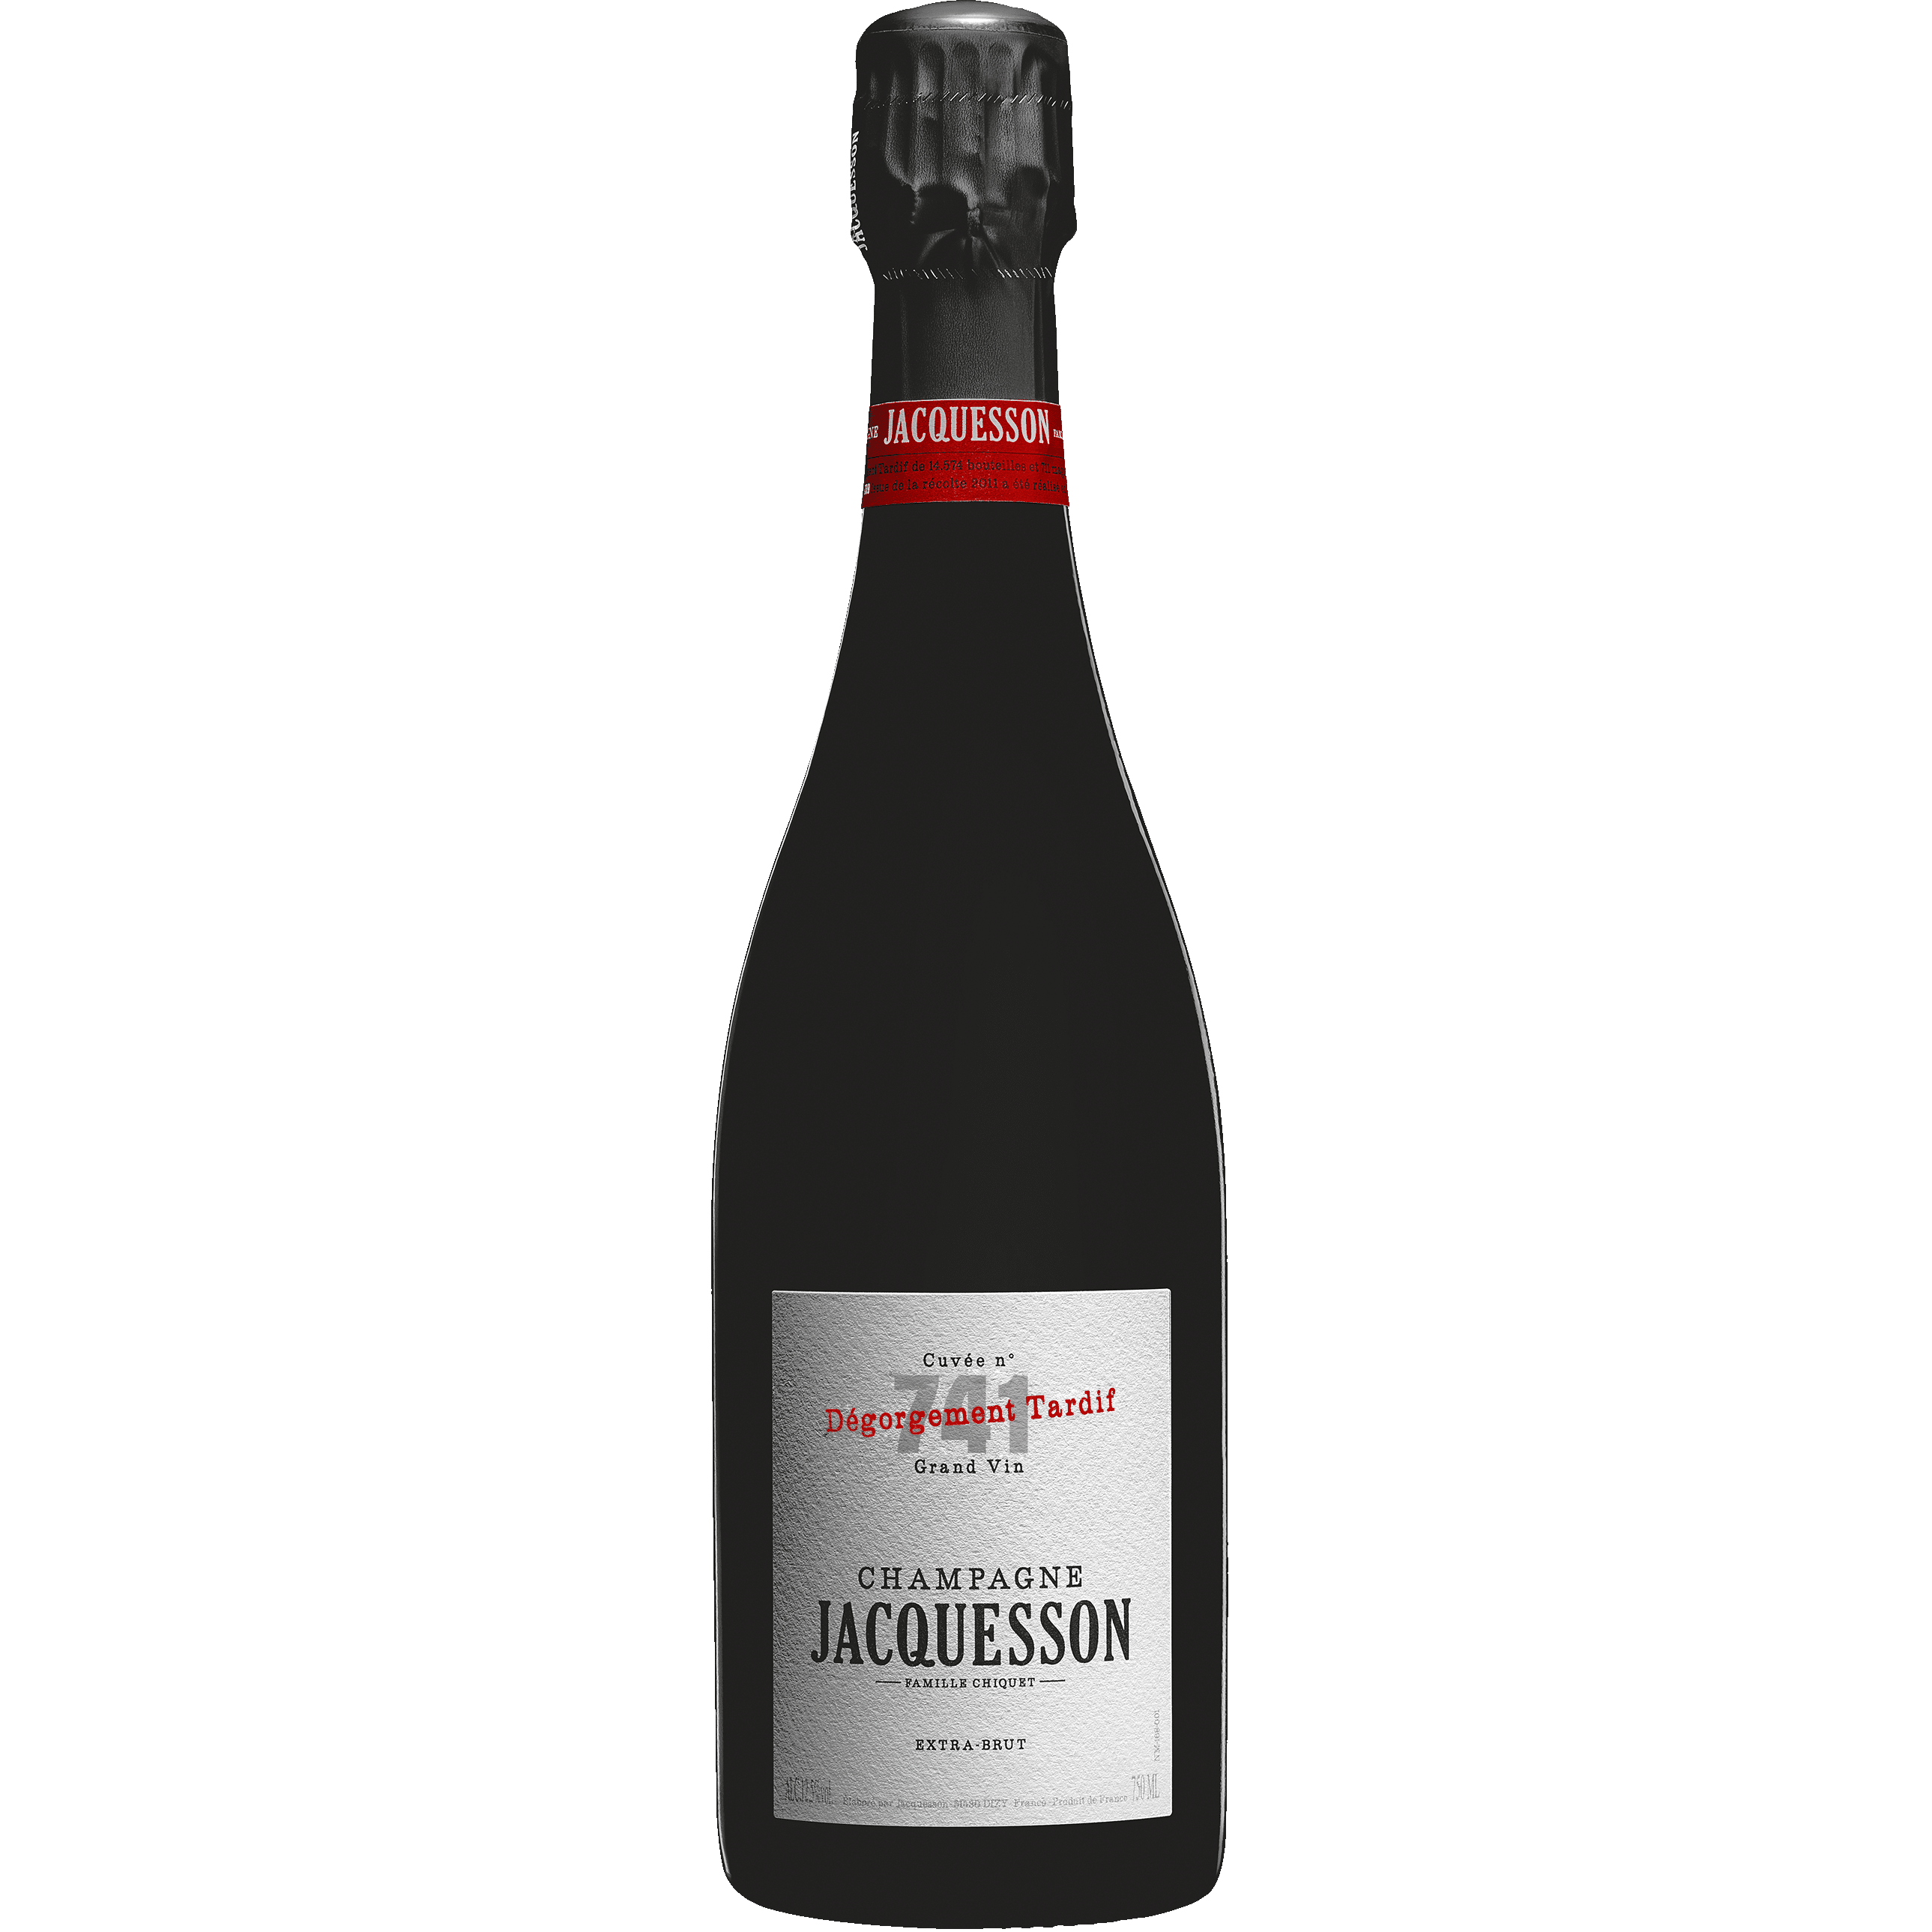 Champagne Jacquesson Cuvée n.741 Dégorgement Tardif Magnum